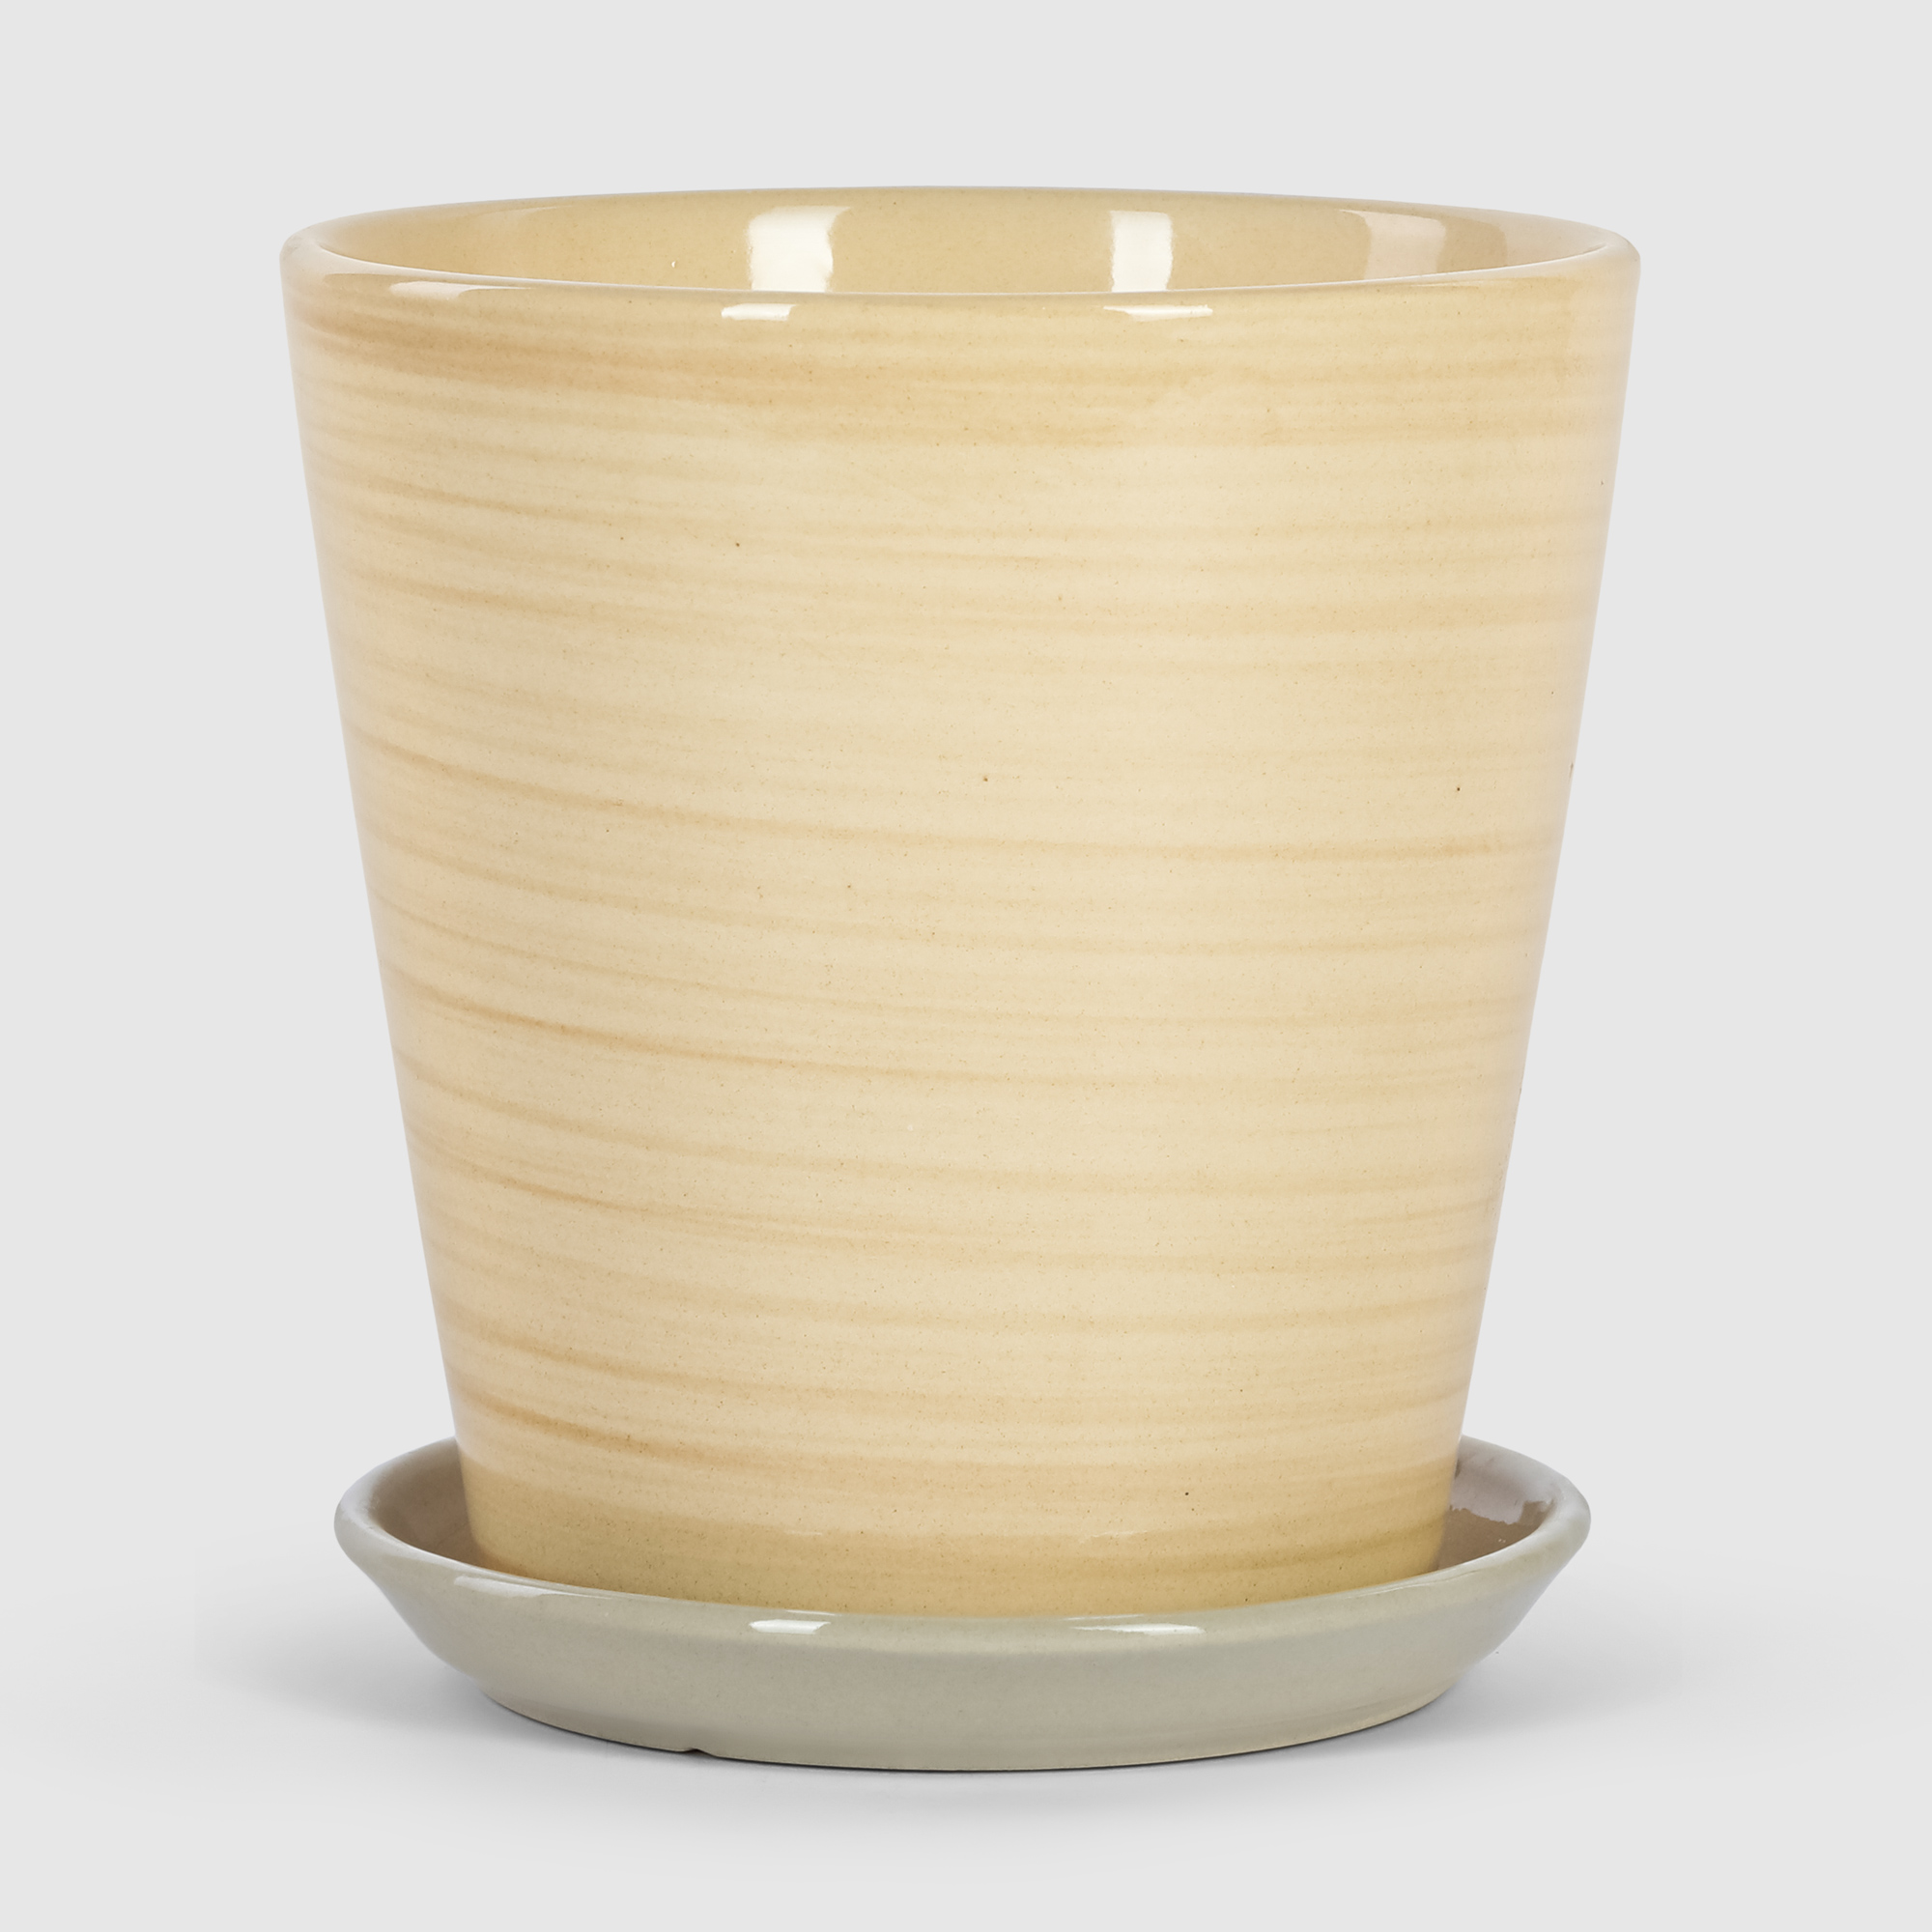 Кашпо керамическое для цветов Shine Pots 13x15см бежевое полосатое кашпо пластиковое для ов подвесное с дренажной сеткой